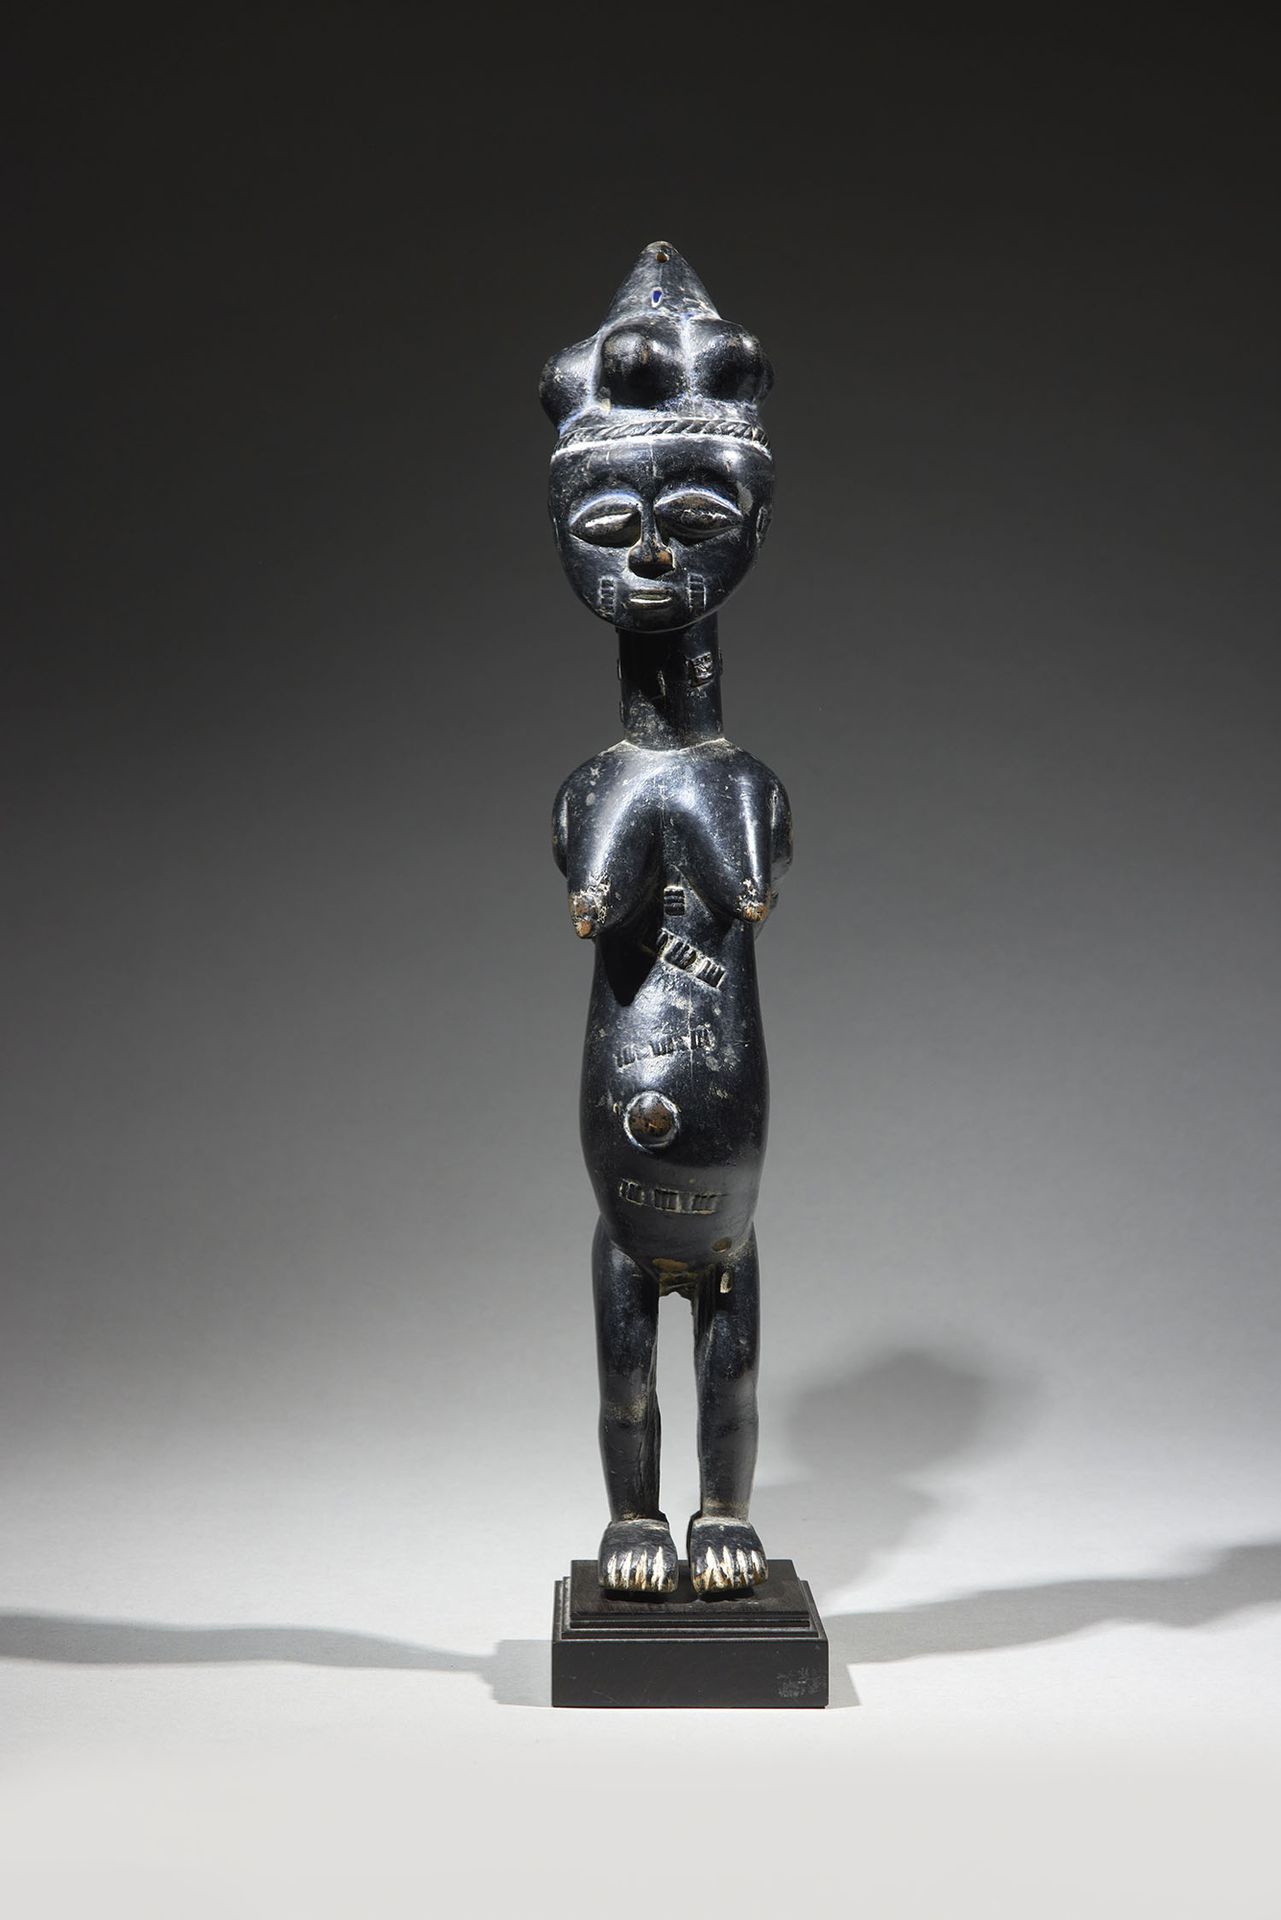 Null Kulango雕像
象牙海岸
木头和颜料
高42.5厘米
罕见的雕像，表现一个站立的女性形象，双臂交叉在背后，胸部下垂，肚子上有伤痕装饰，肚脐突出。圆&hellip;